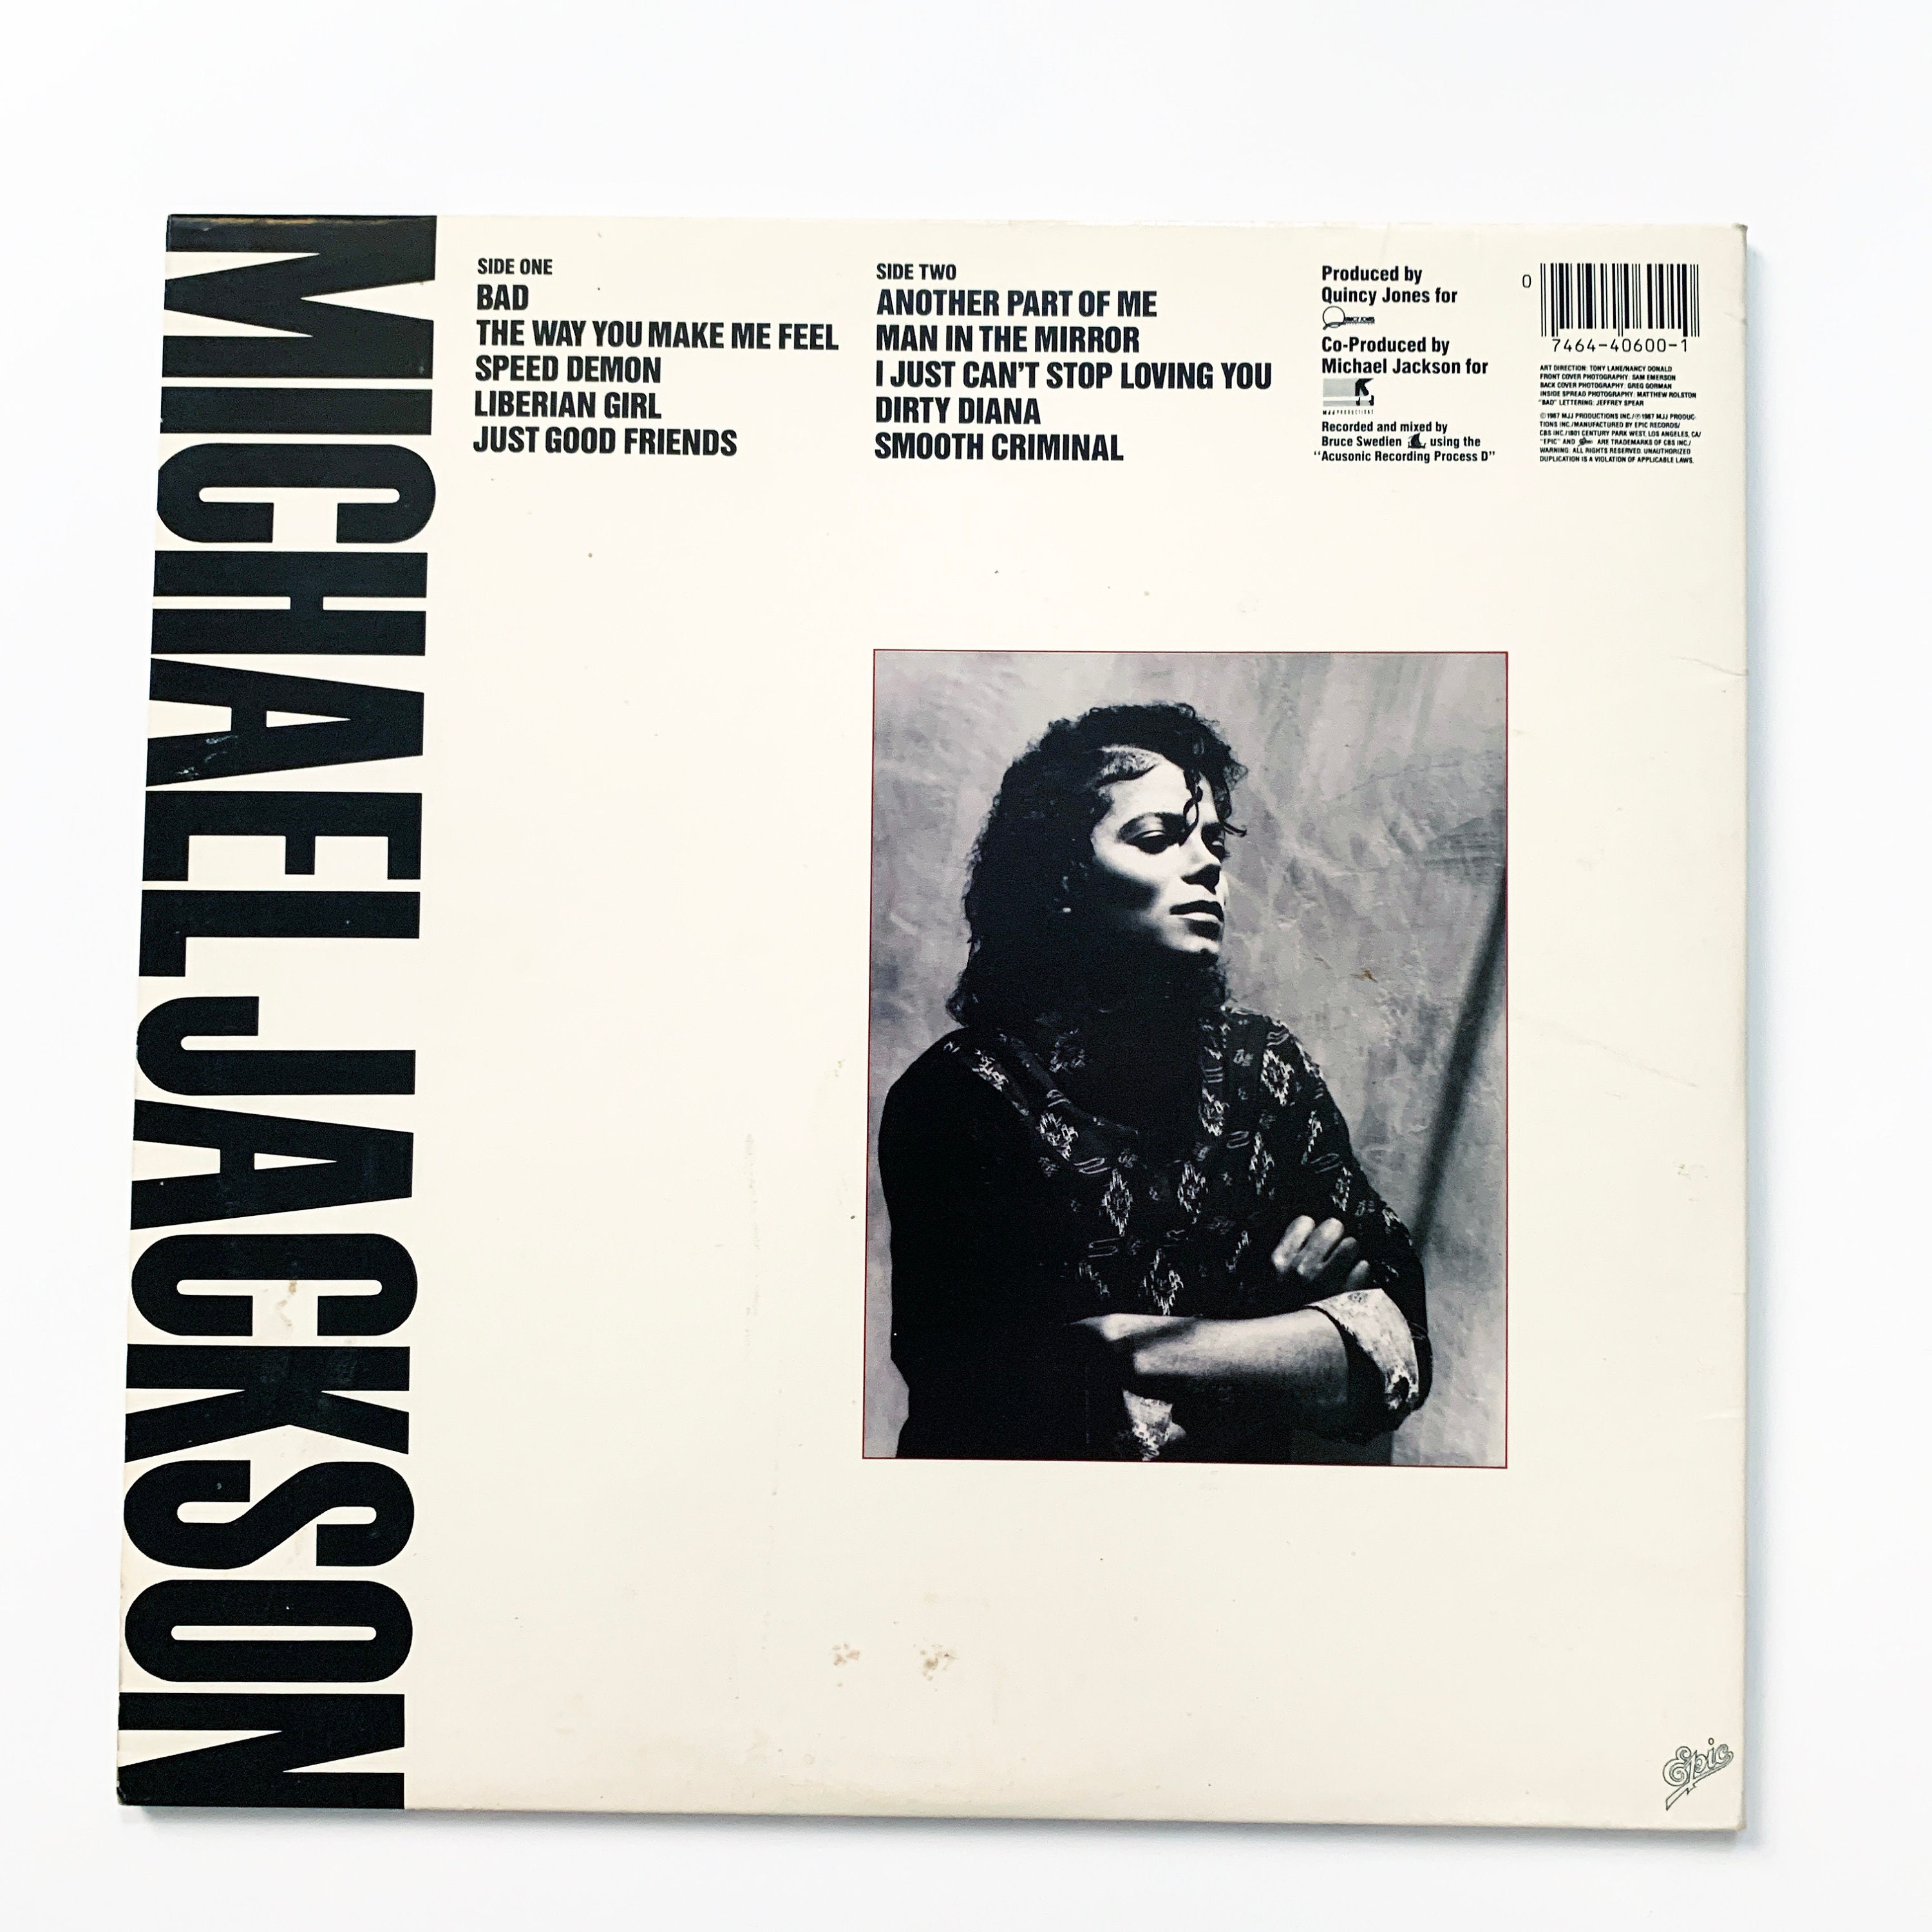 Disquería Vinilos Copiapó on Instagram: Vinilo Michael Jackson Bad  $35.000.- edición original de época holandés 1987, en impecable estado  inserto, carátula y vinilo. Interesados sólo por interno 😁 Hacemos envíos  a todo